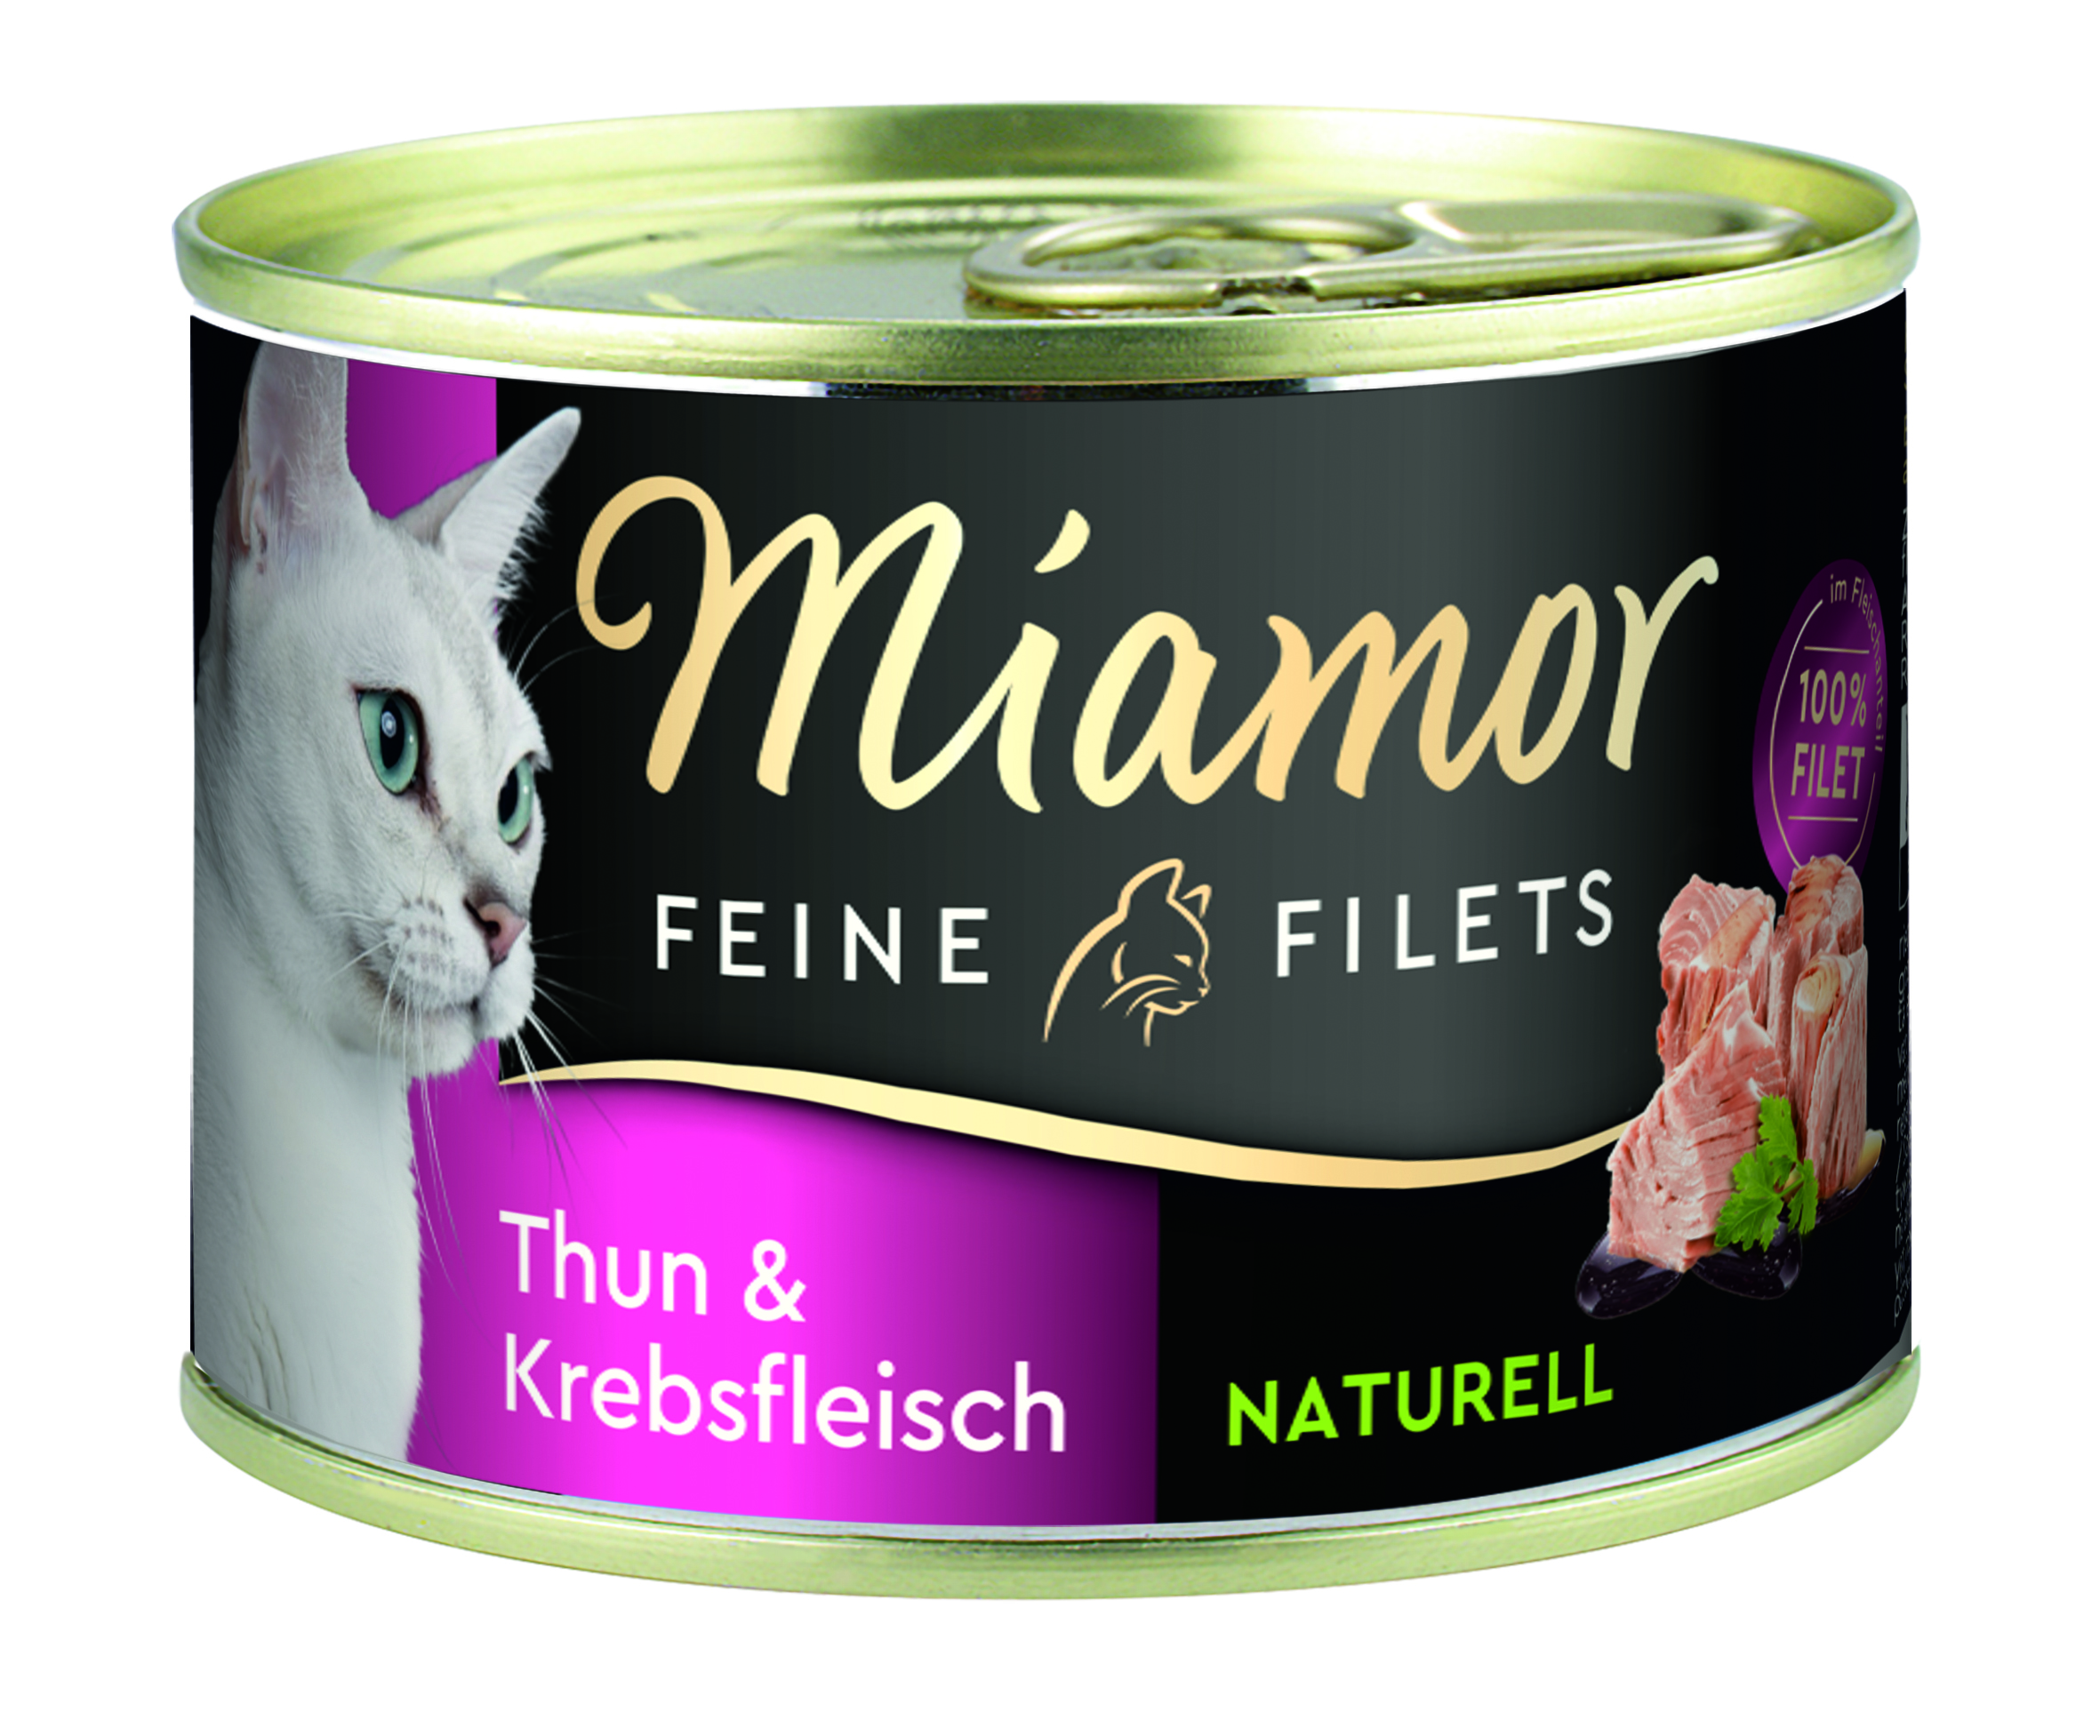 Miamor Feine Filets Naturell Thunfisch & Krebsfleisch 156g Dos